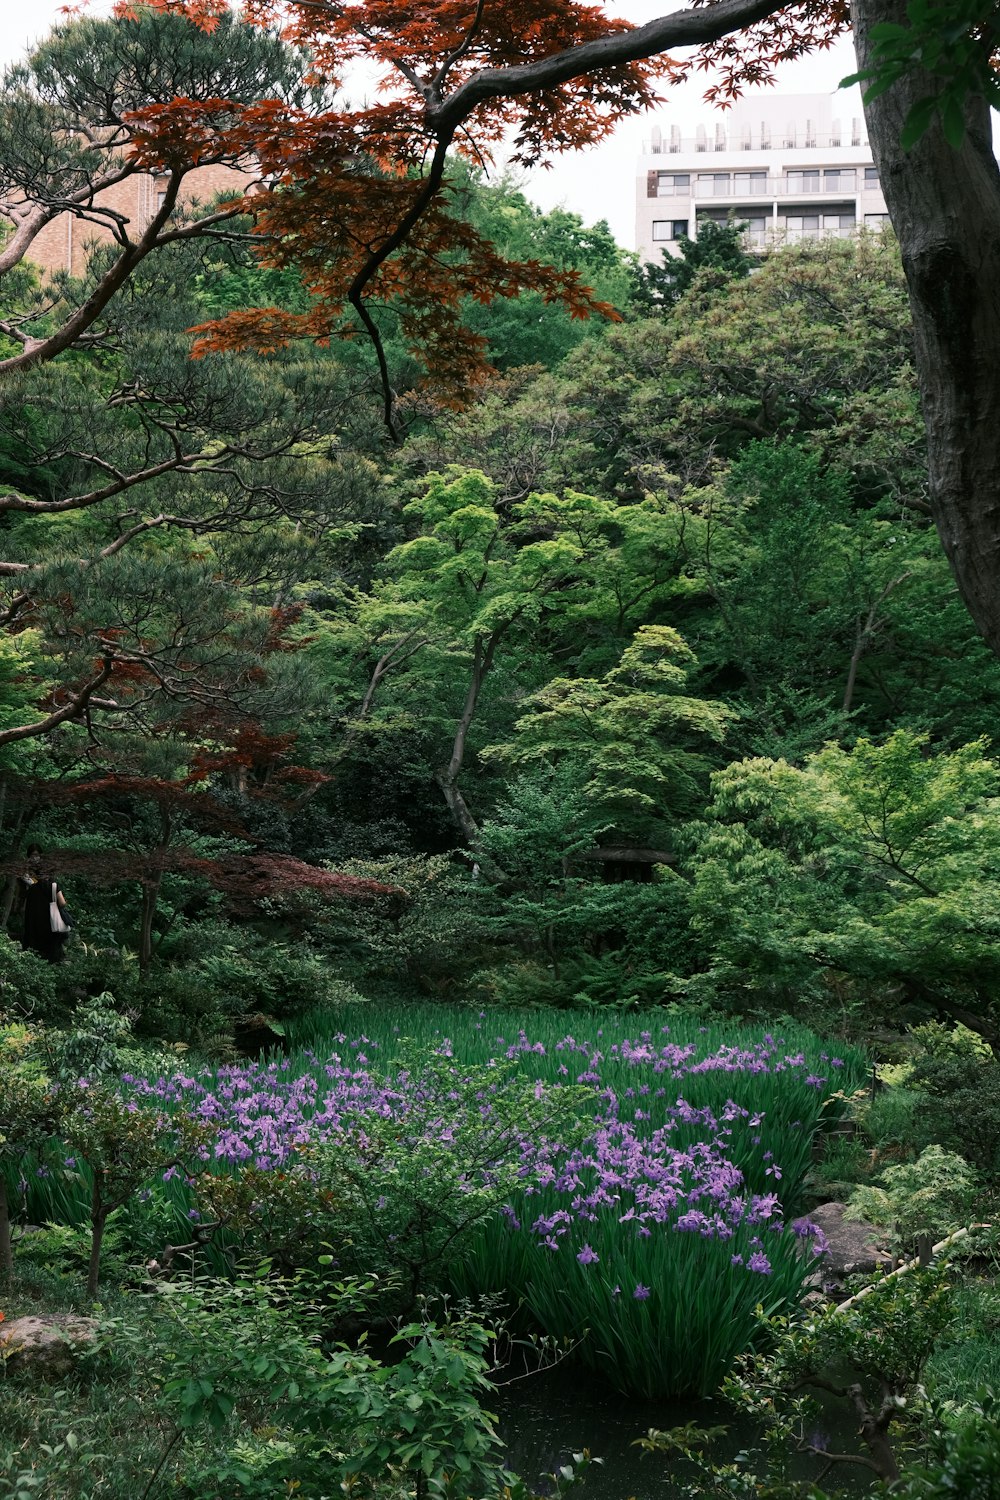 Un frondoso bosque verde lleno de muchas flores moradas